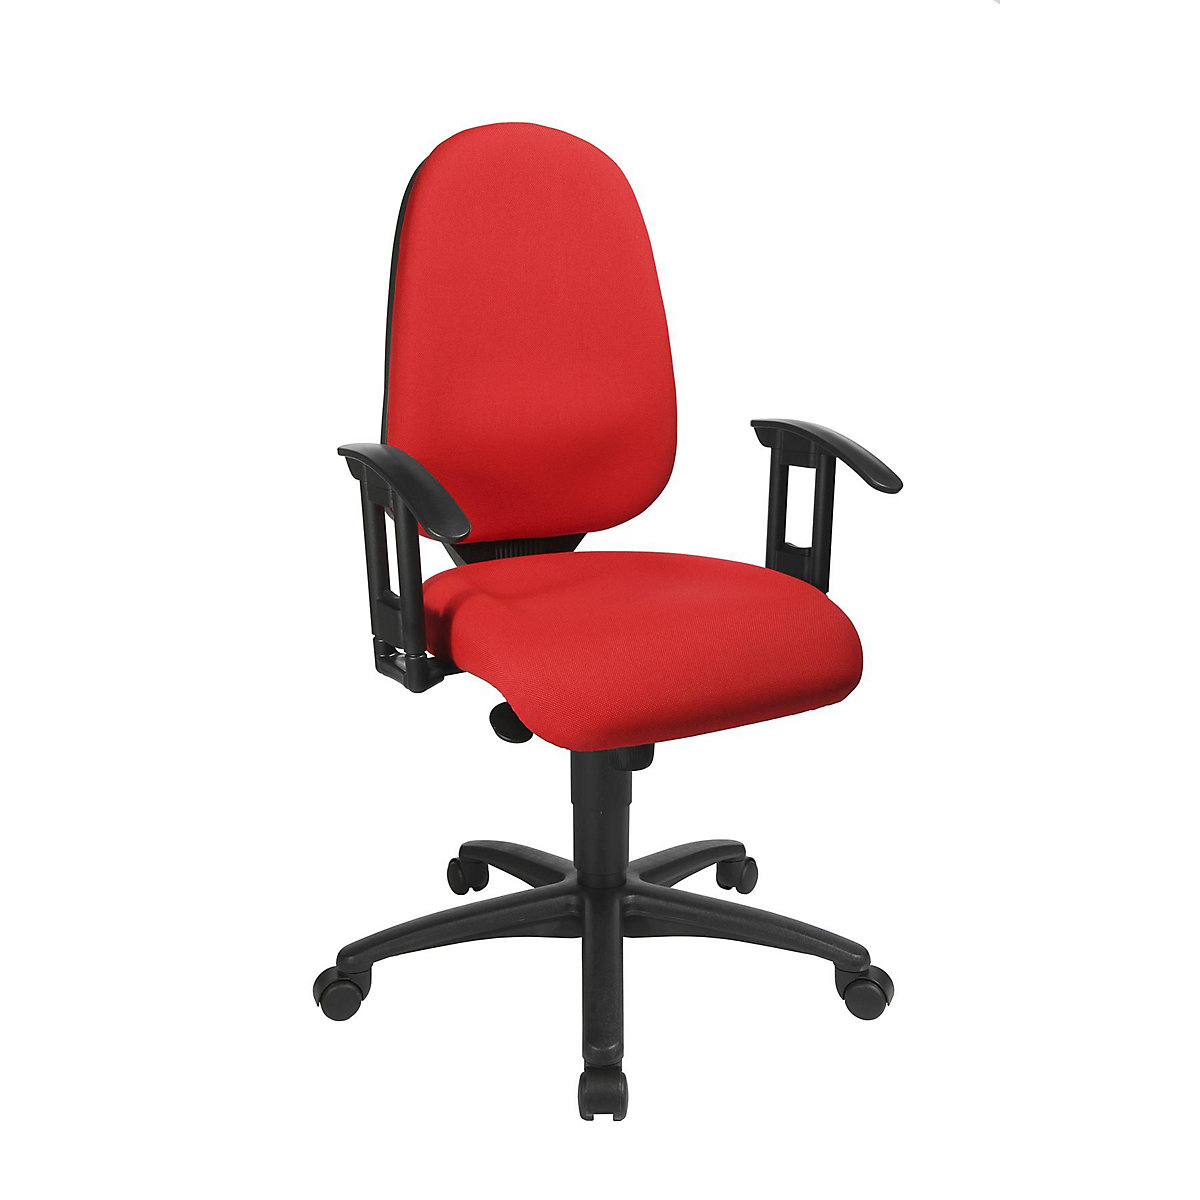 Okretna stolica s potporom za kralježnicu, sinkrona mehanika, sjedalo s potporom za kralježnicu – Topstar (Prikaz proizvoda 14)-13